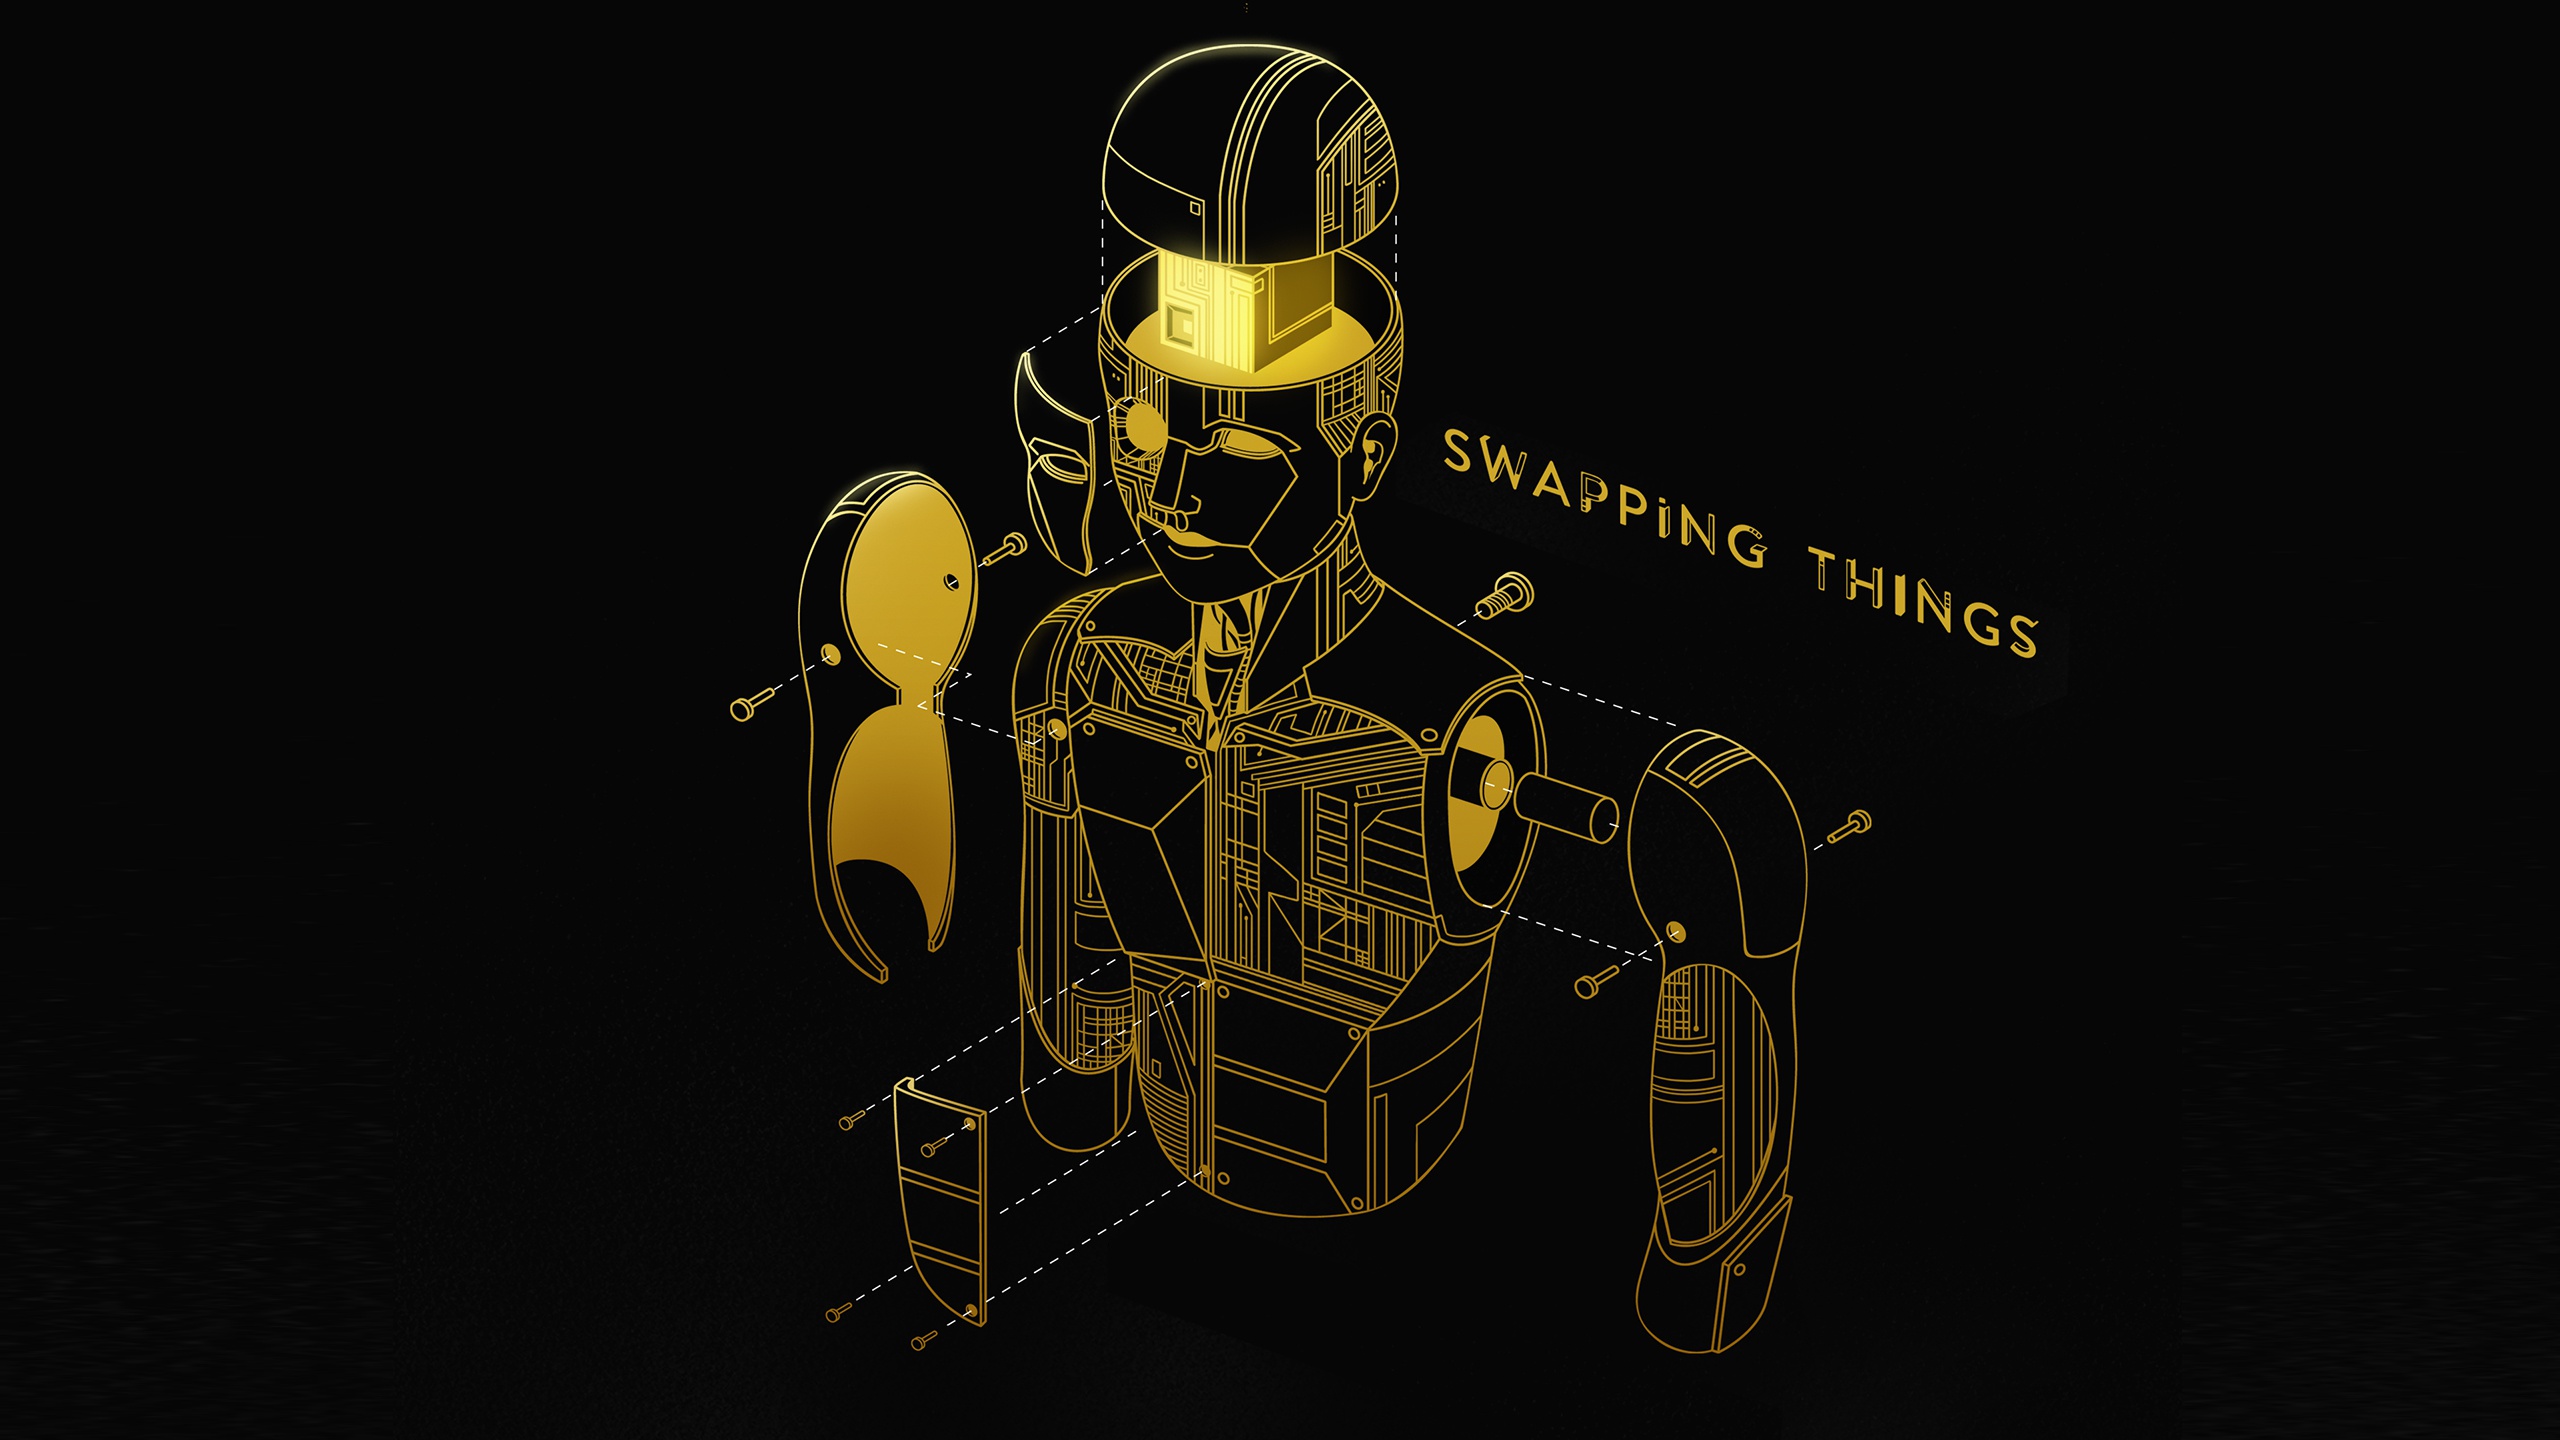 Swap things